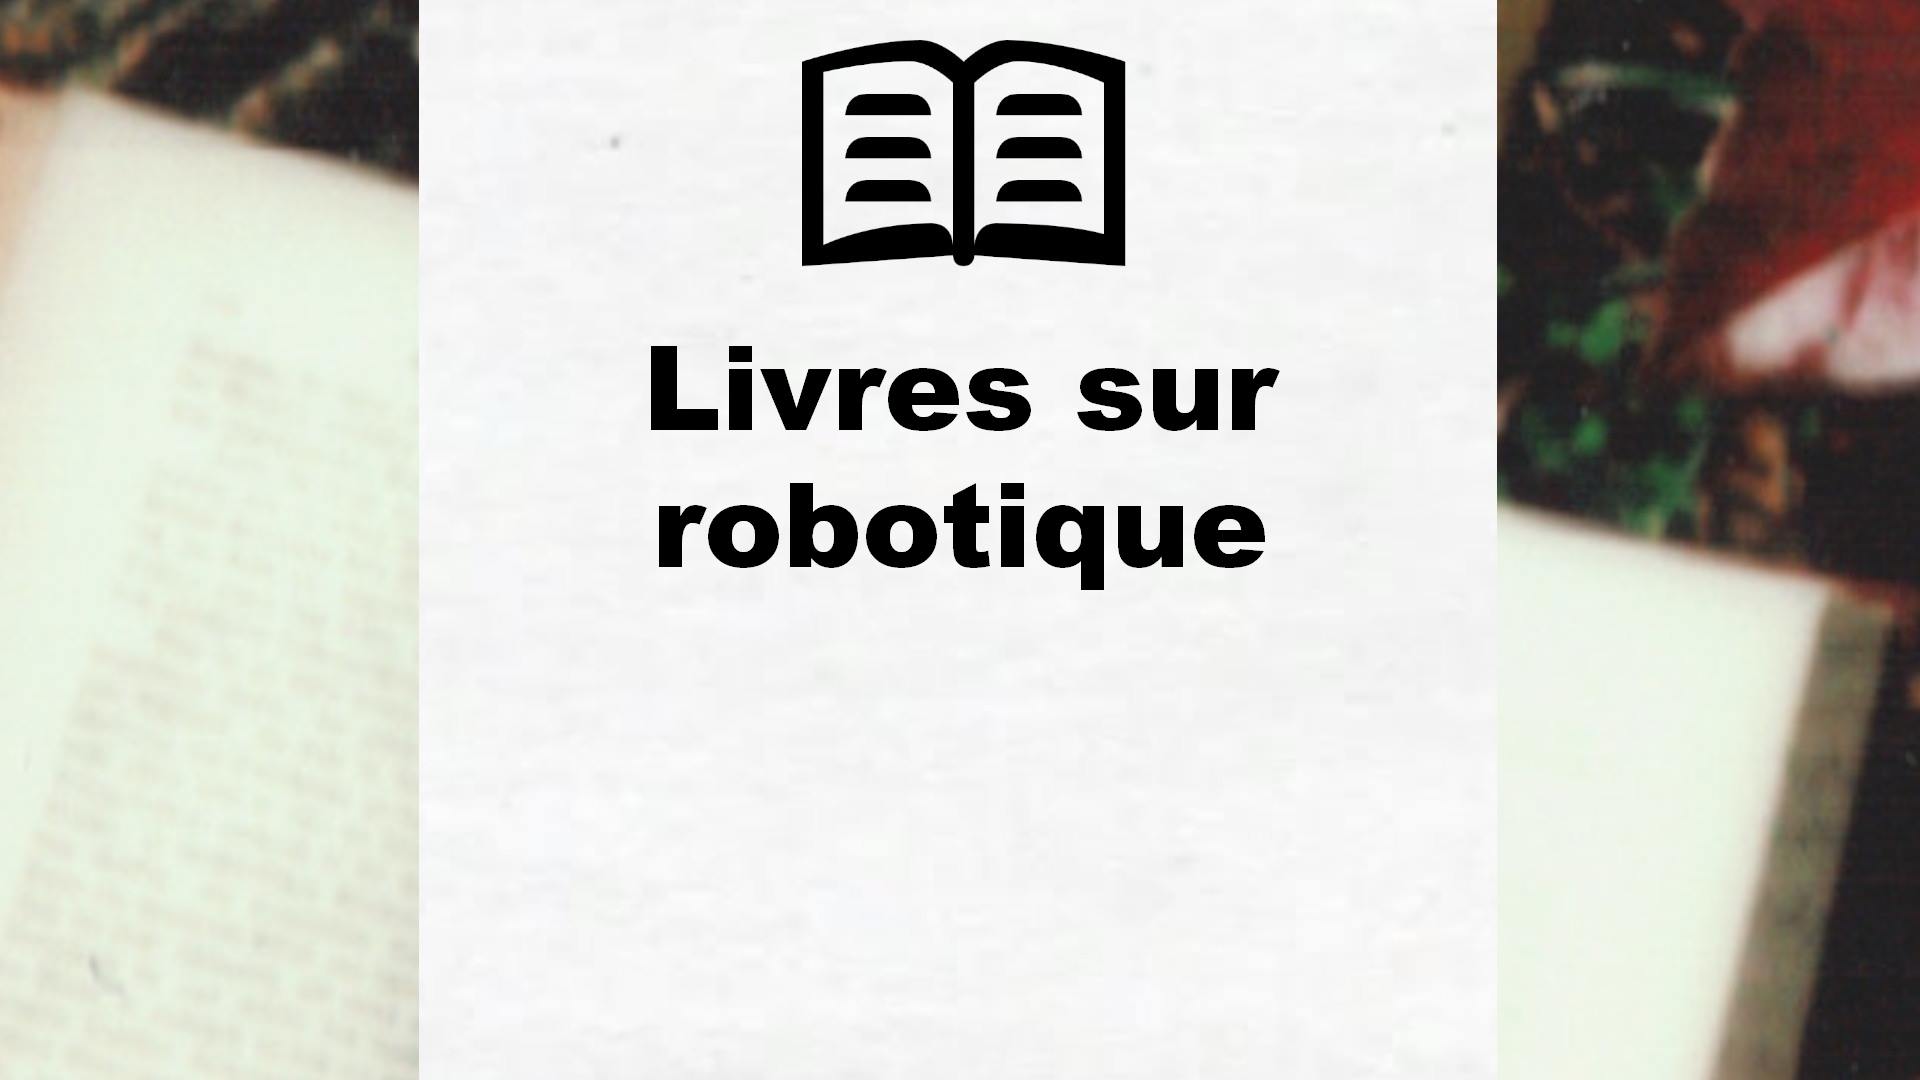 Livres sur robotique